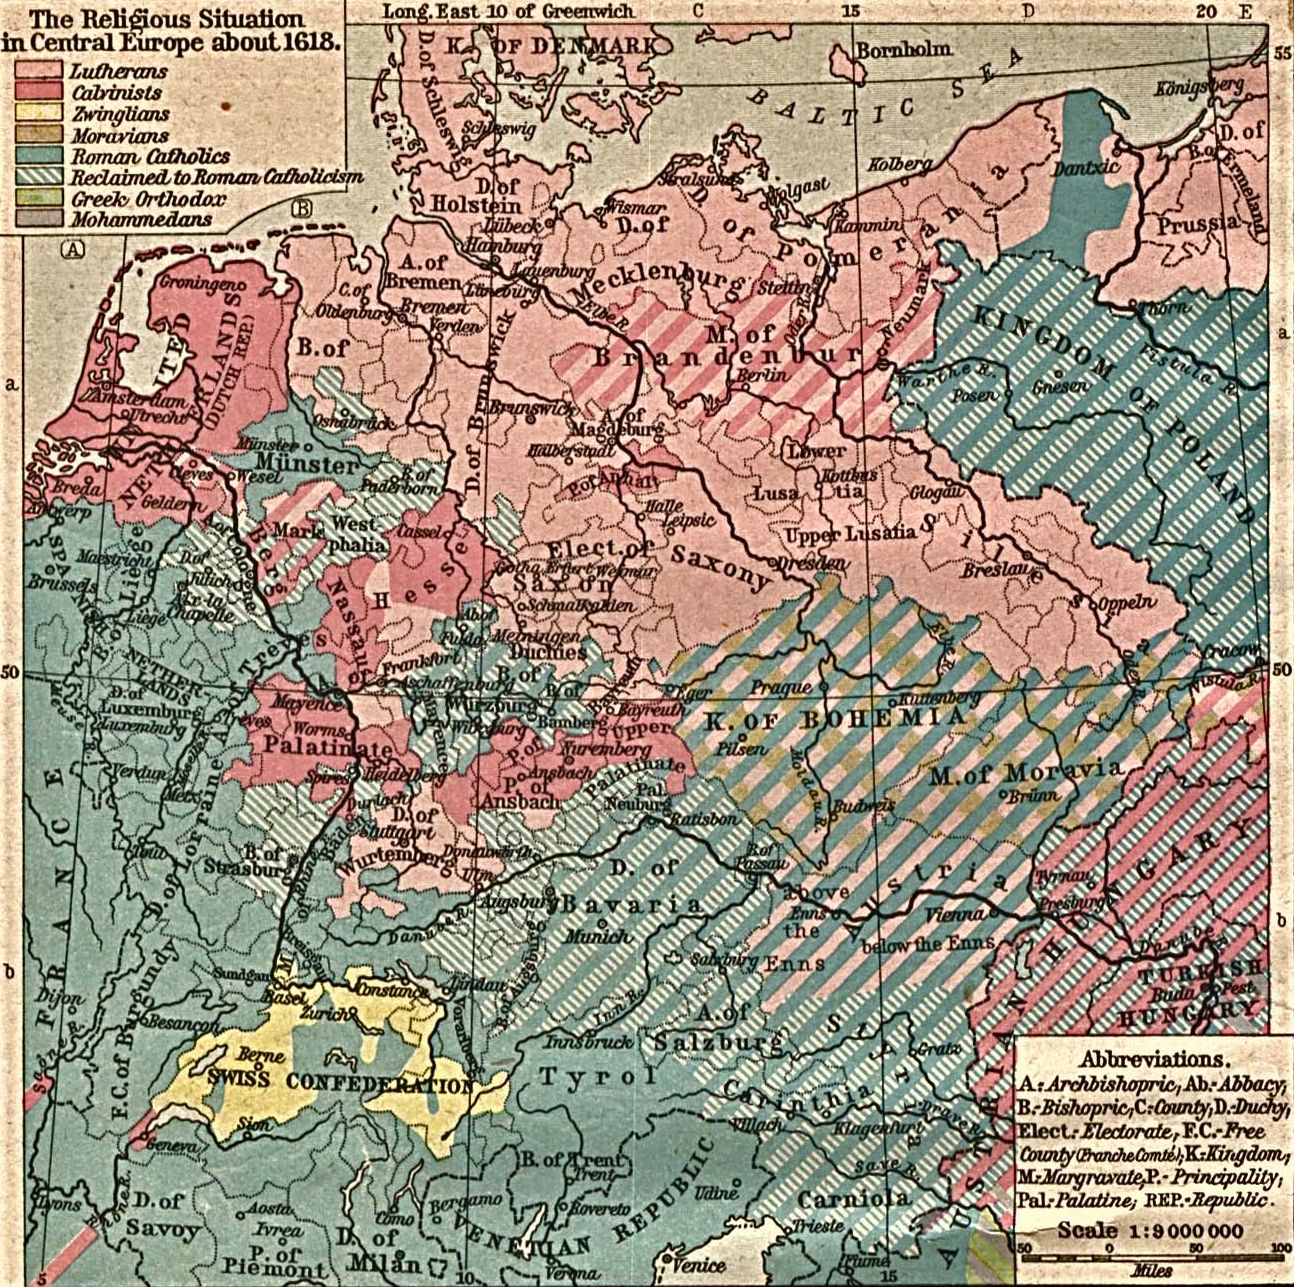 1618年中歐地區的宗教分佈情況。